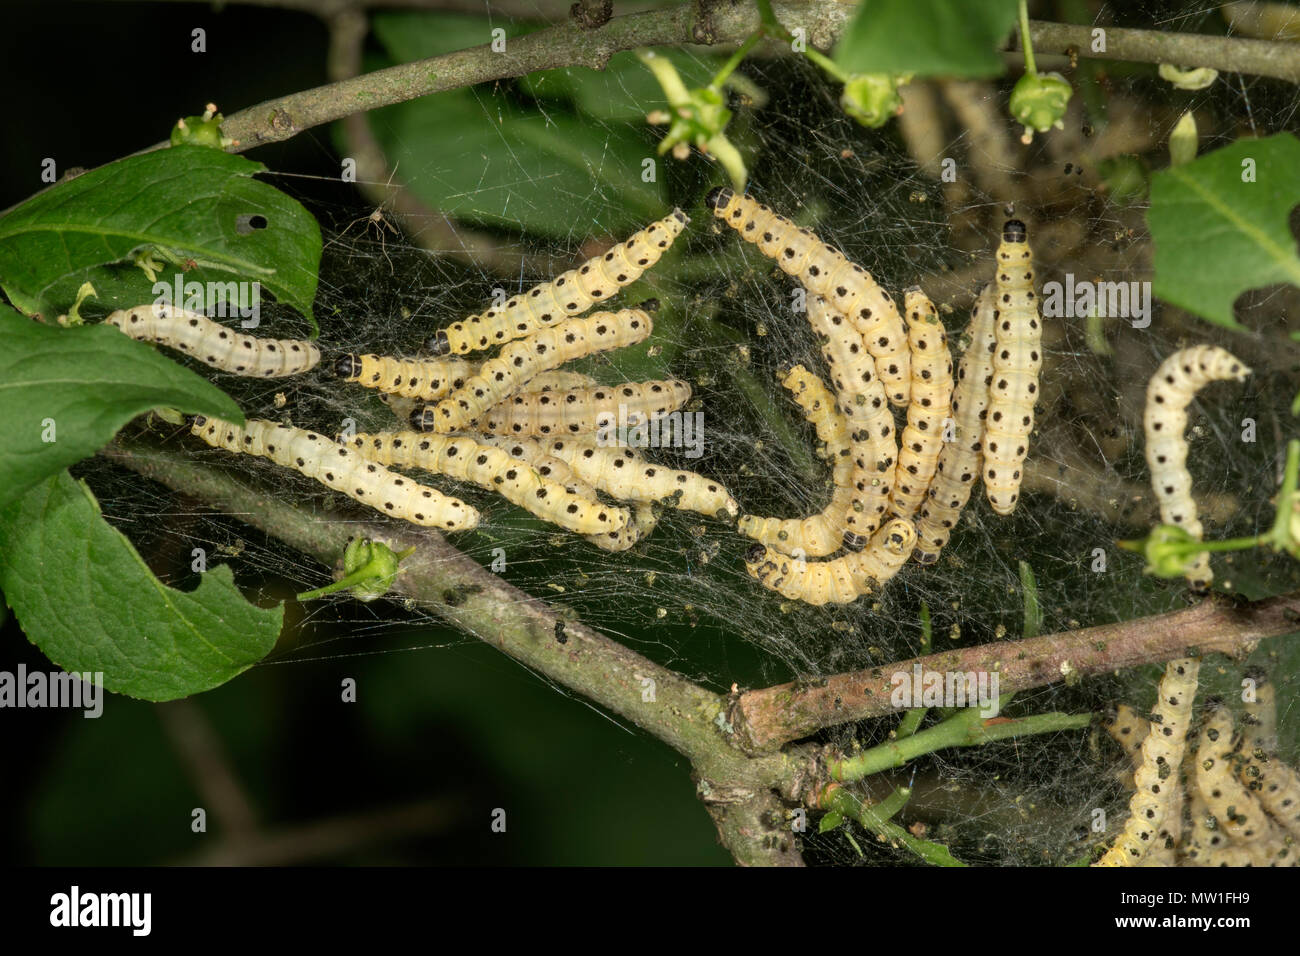 Caterpillars of the European spindle spirit moth (Yponomeuta cagnagella) in their web on the shrub (Euonymus europaeus) Stock Photo